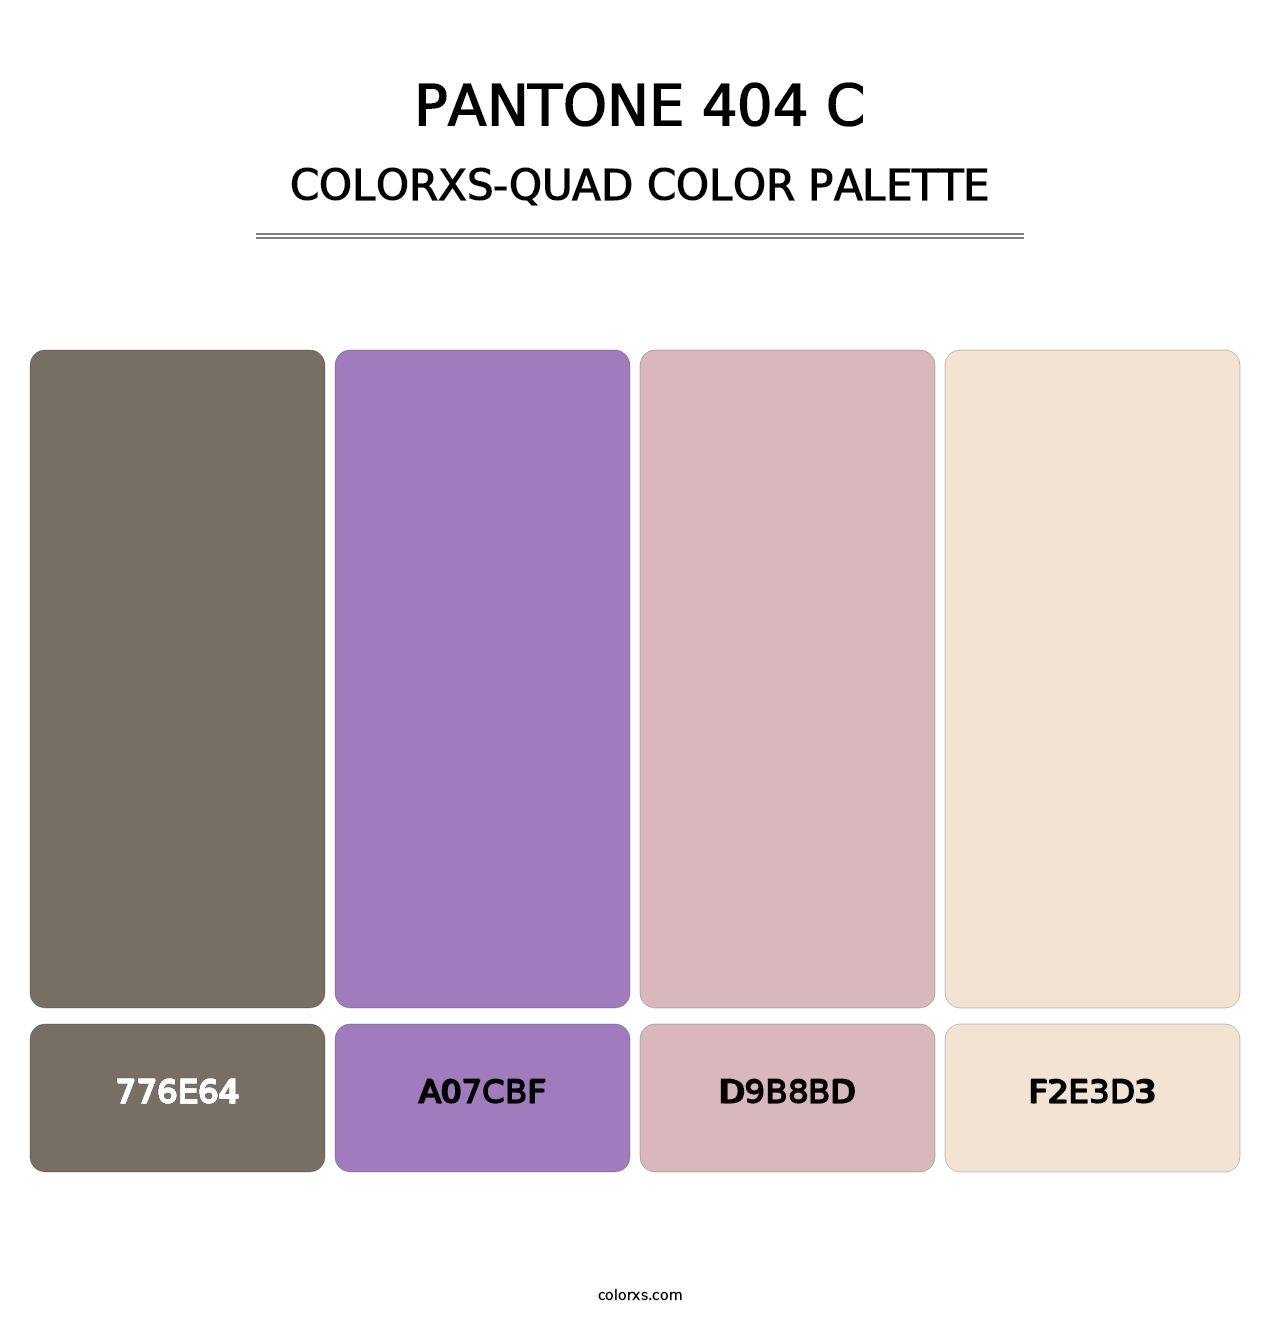 PANTONE 404 C - Colorxs Quad Palette